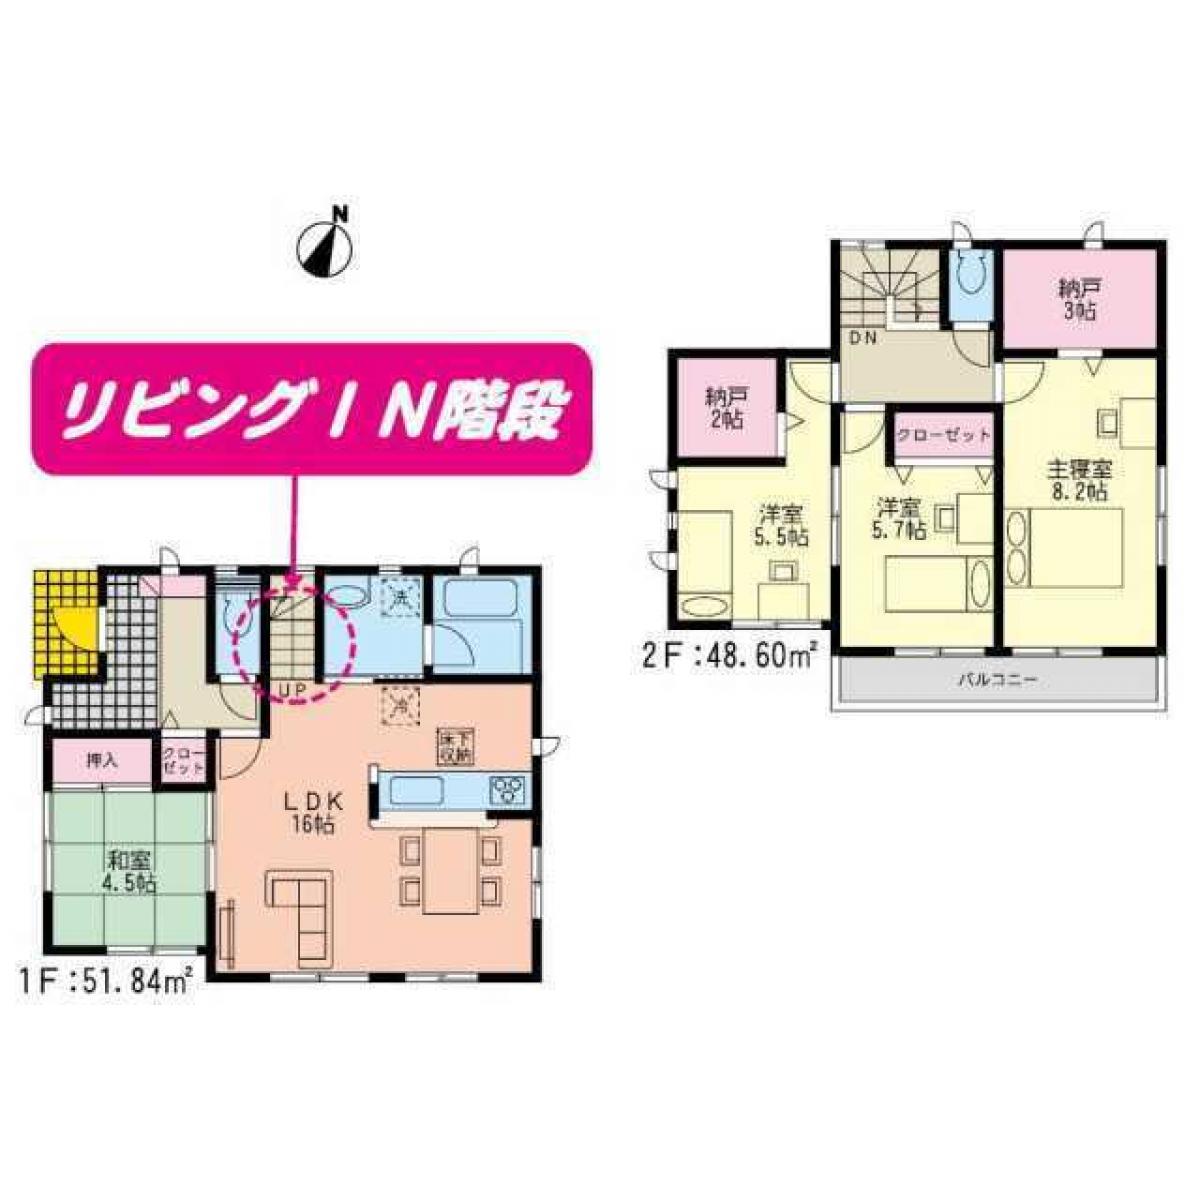 Picture of Home For Sale in Fukuoka Shi Nishi Ku, Fukuoka, Japan